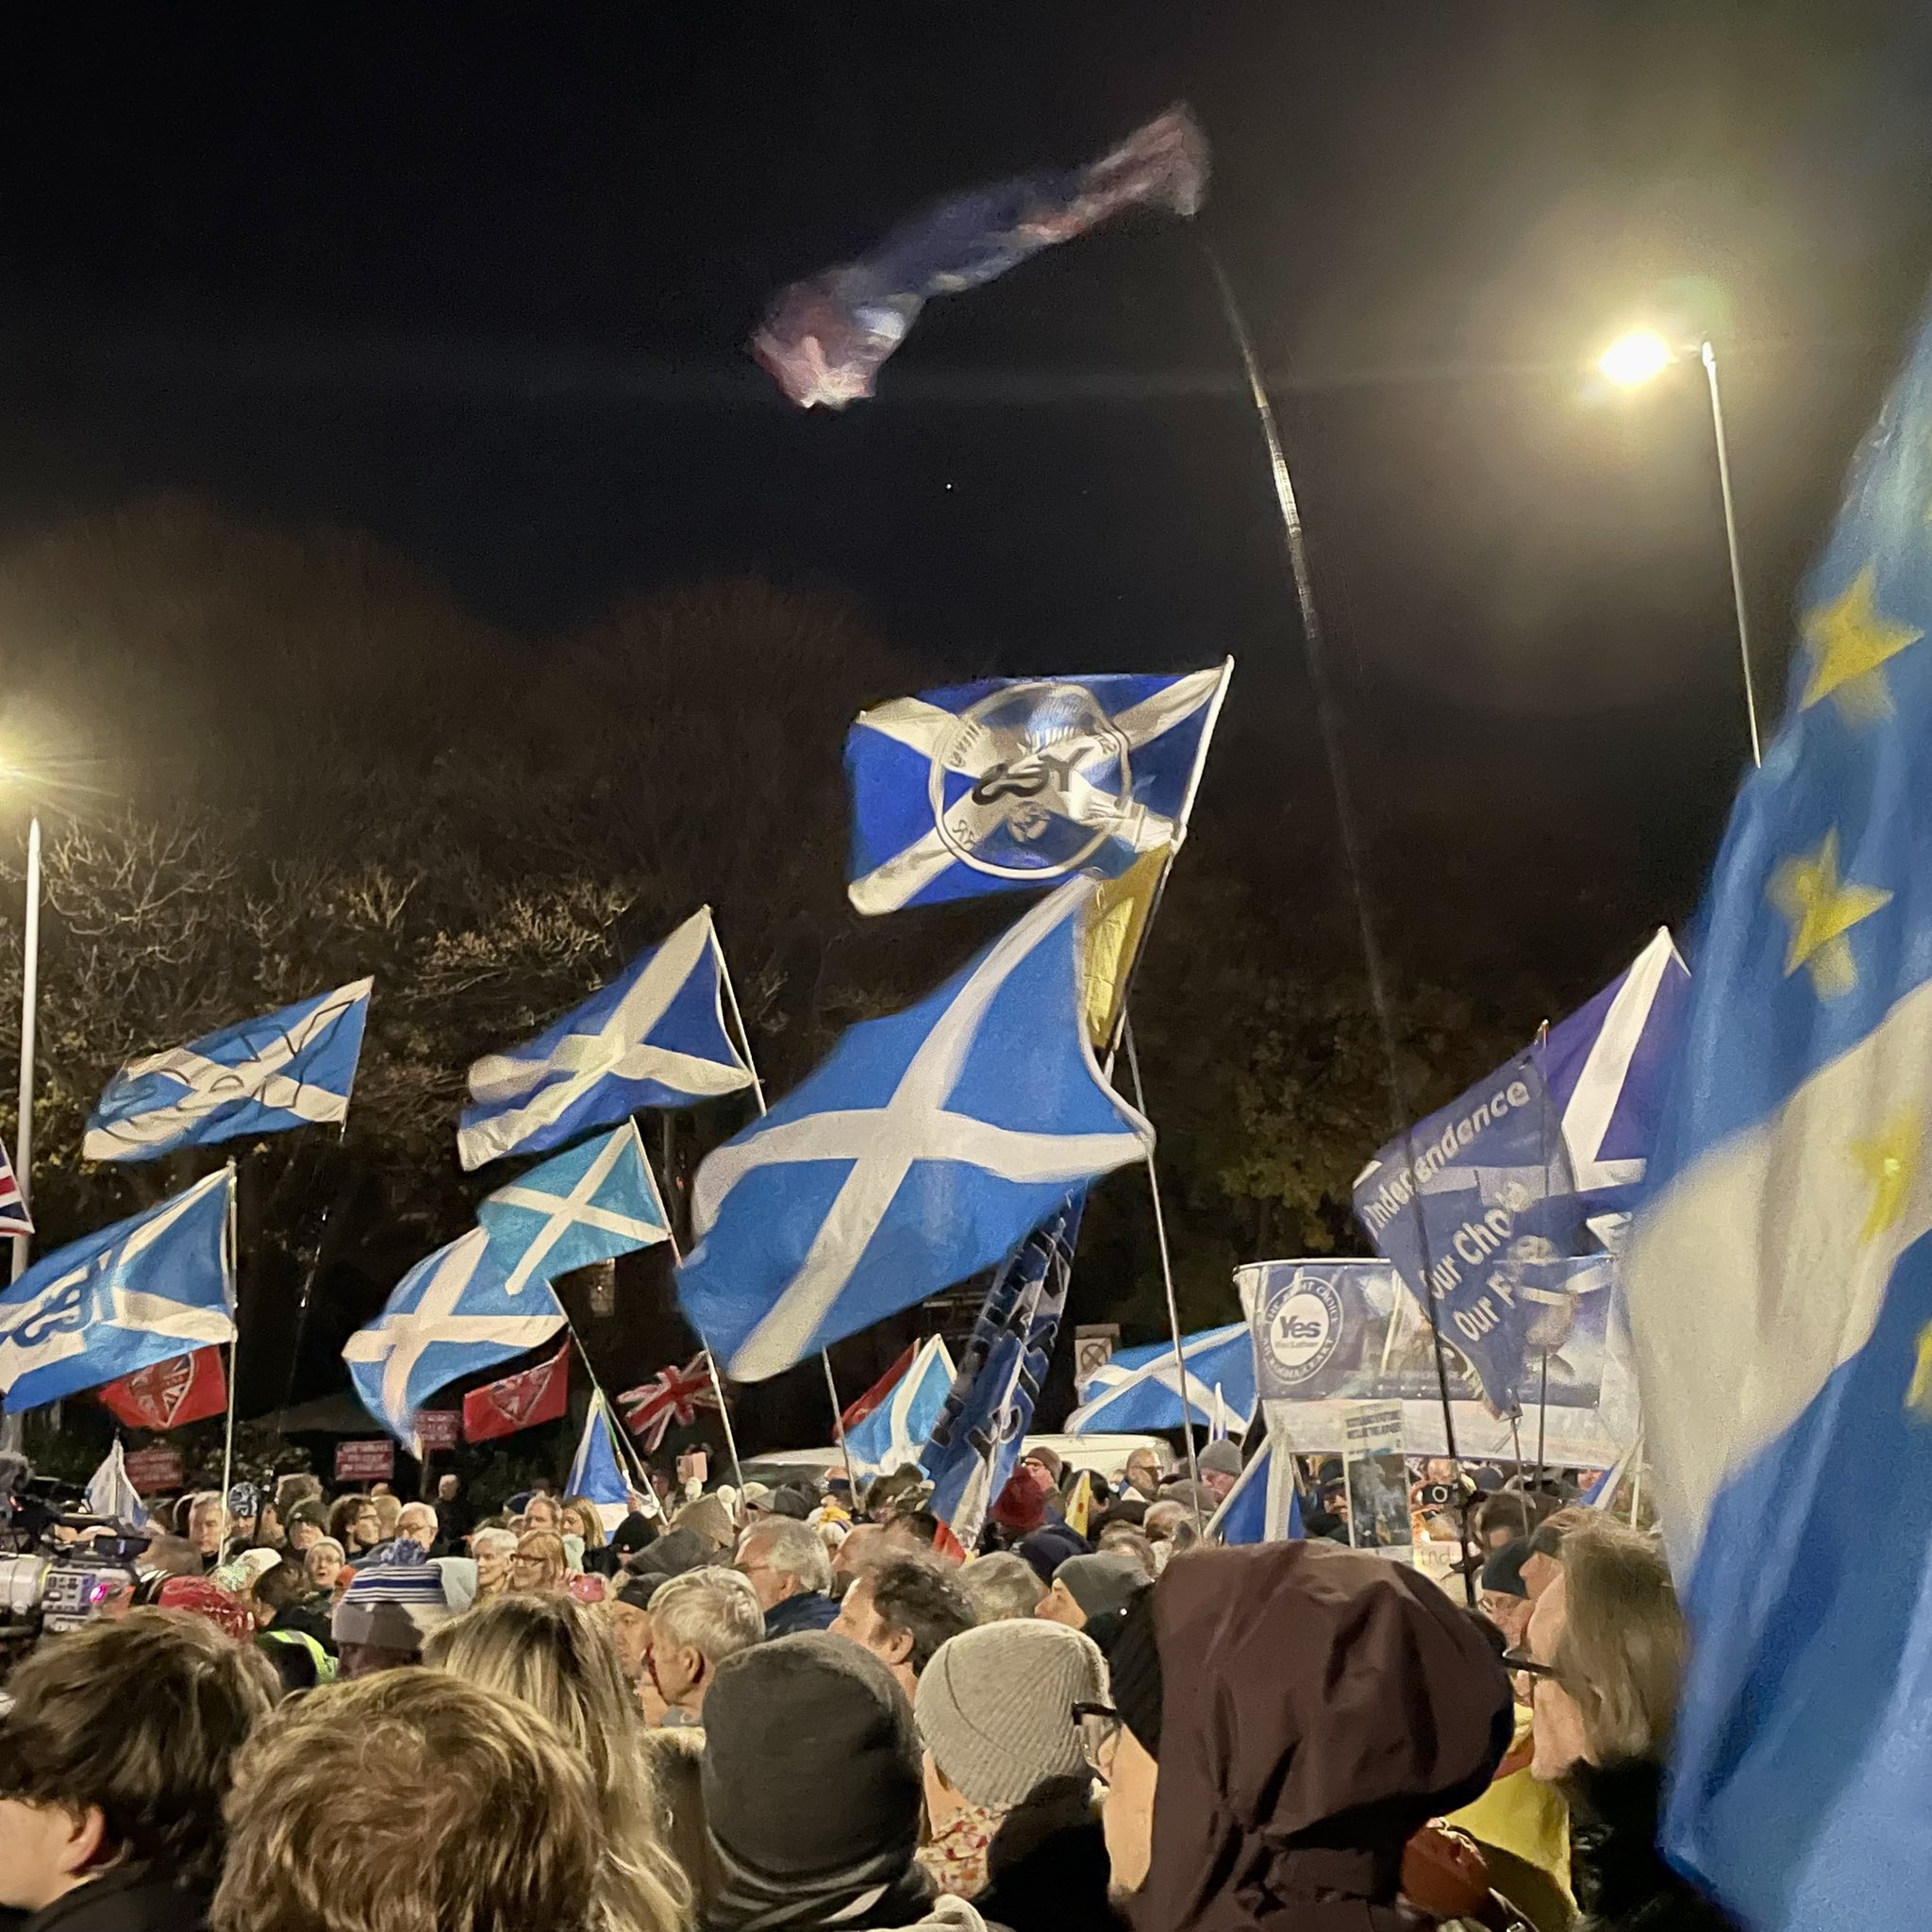 Miles de escoceses toman las calles a favor del referéndum: "¡Depende de nosotros decidir!"